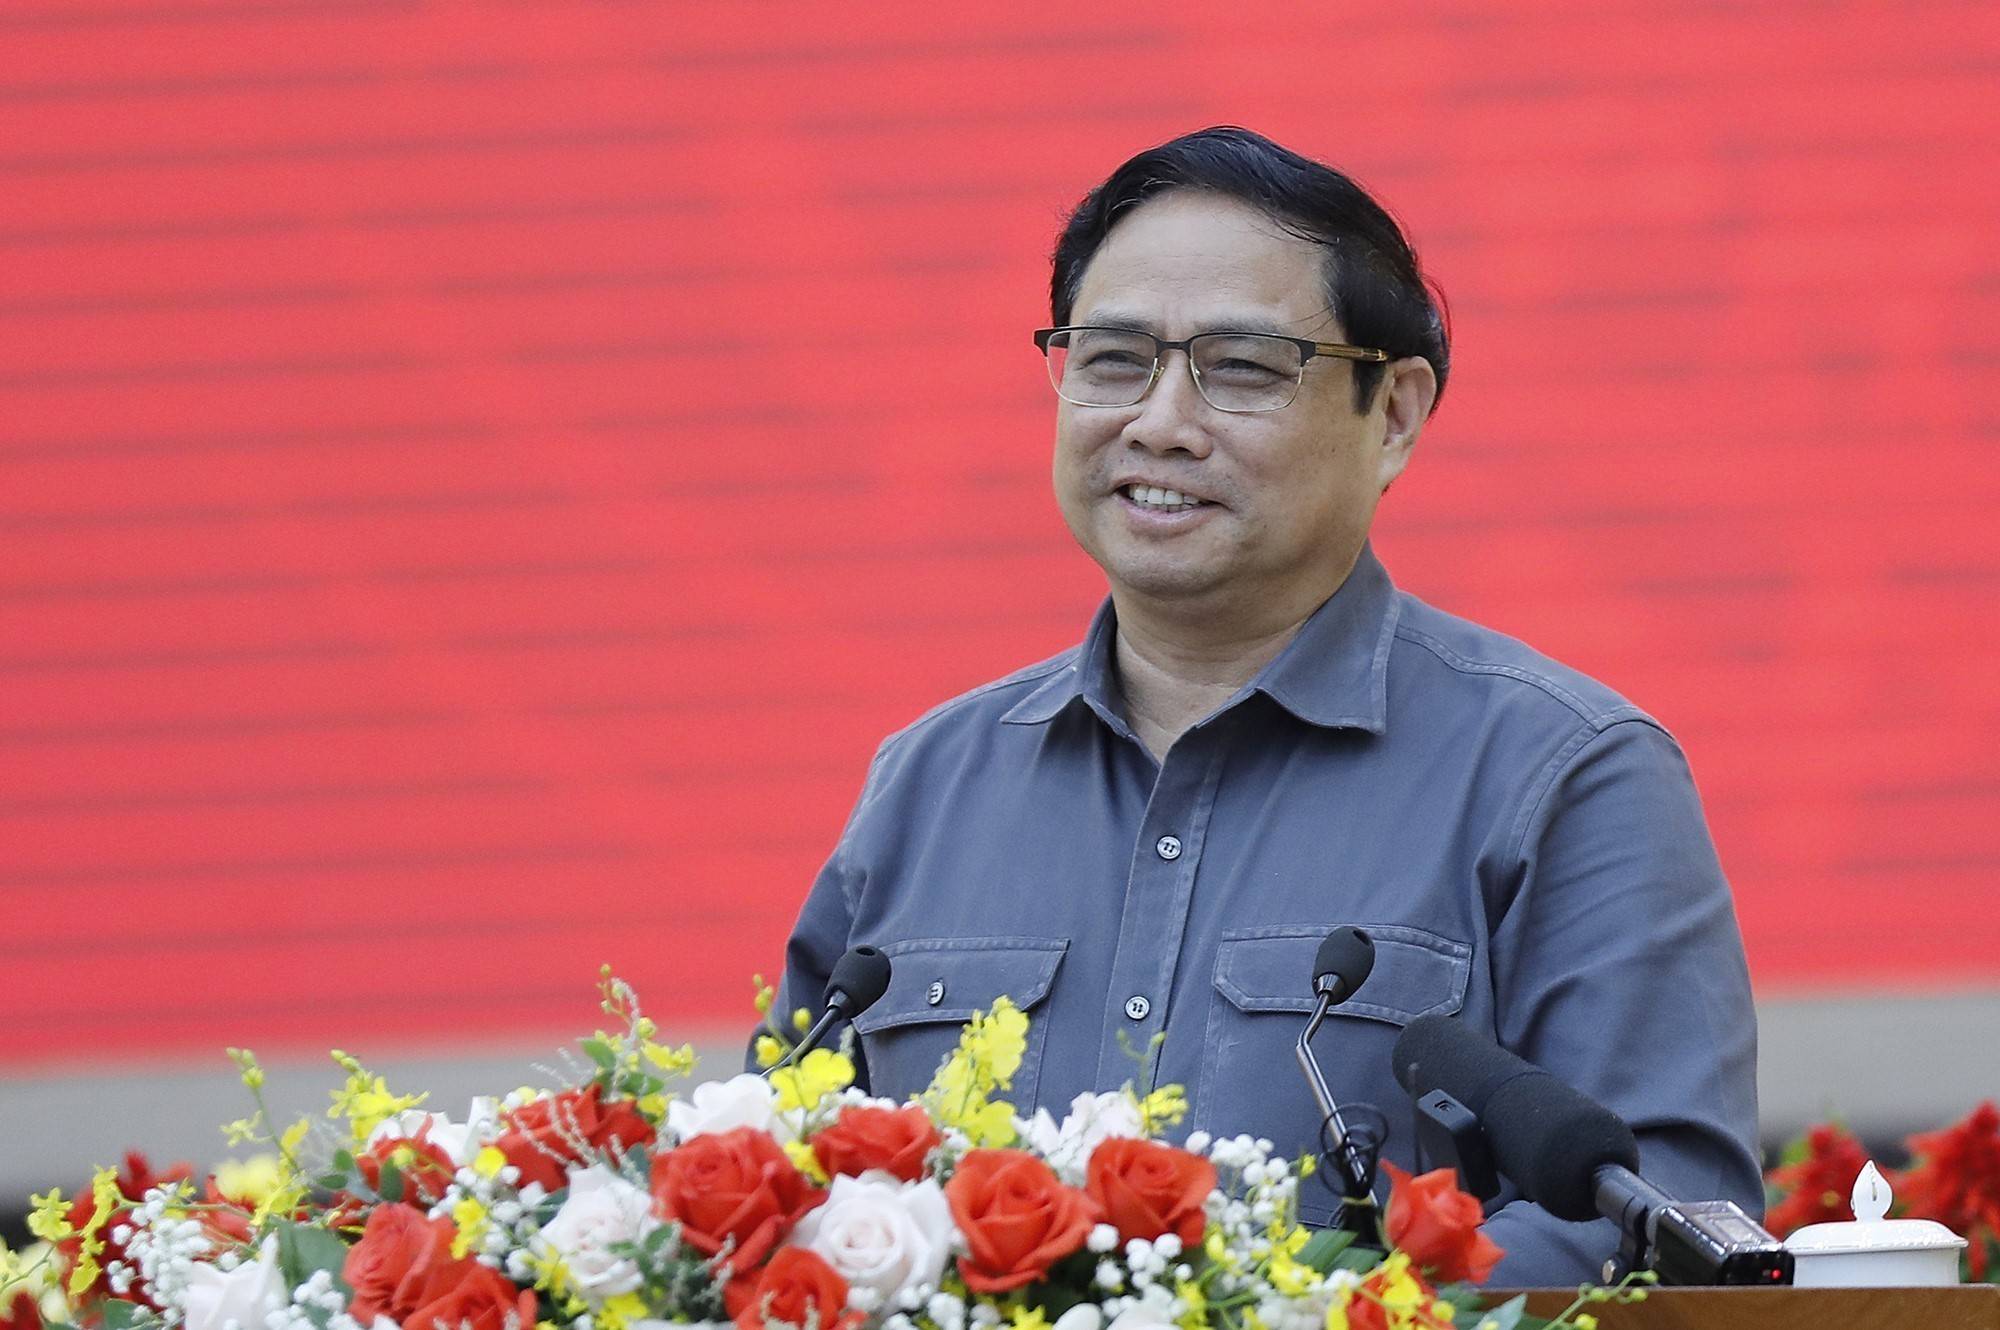 Thủ tướng: Đưa Lâm Đồng trở thành động lực tăng trưởng của Tây Nguyên và cả nước